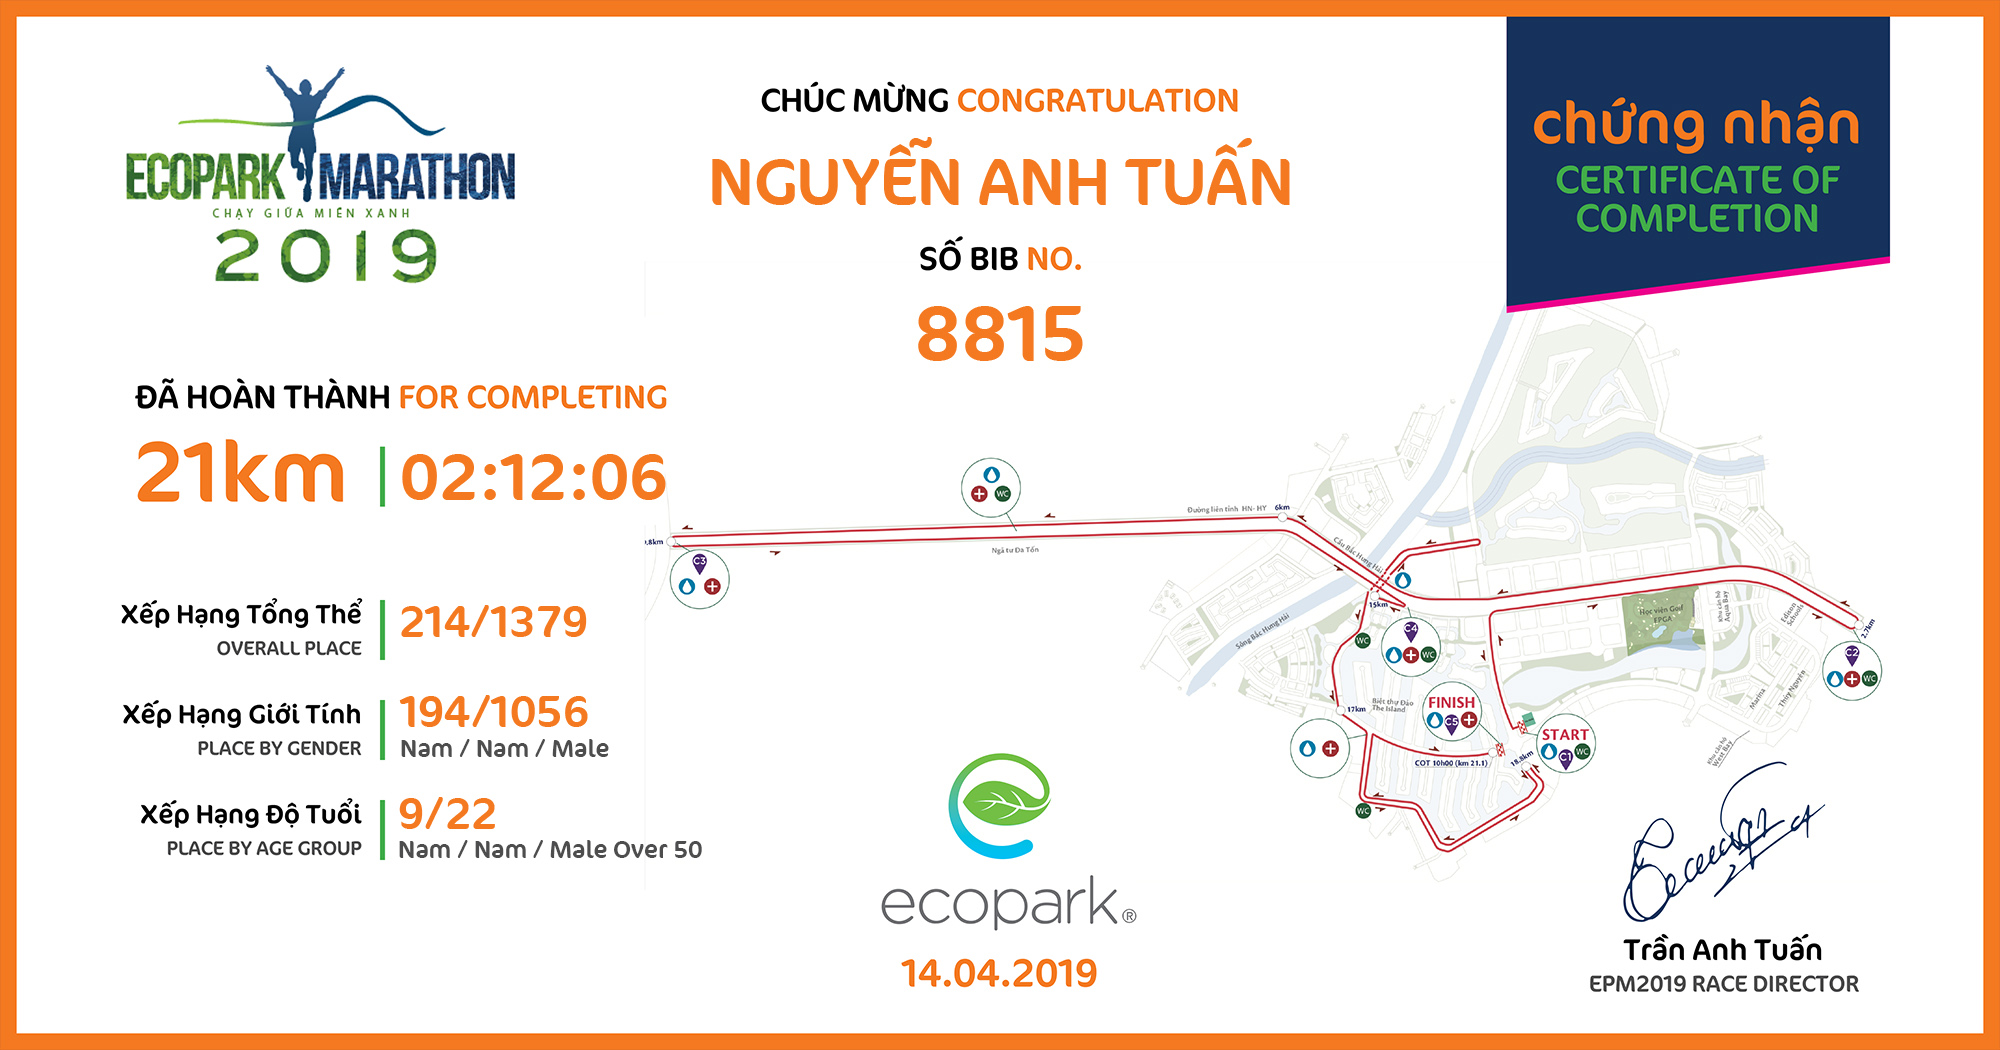 8815 - Nguyễn Anh Tuấn